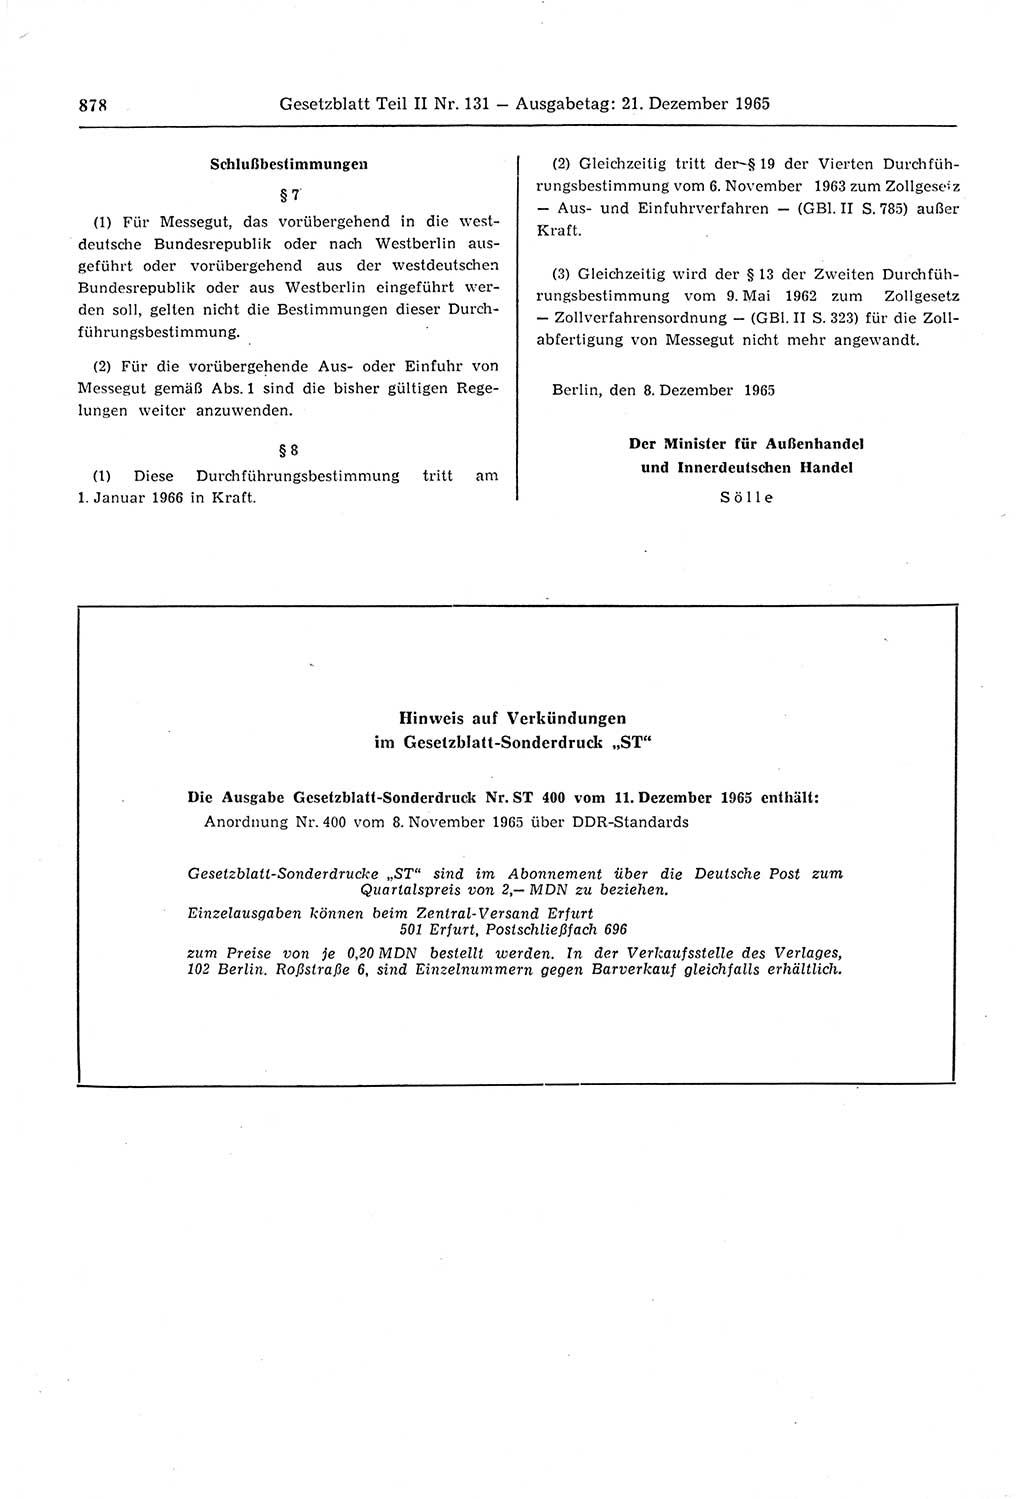 Gesetzblatt (GBl.) der Deutschen Demokratischen Republik (DDR) Teil ⅠⅠ 1965, Seite 878 (GBl. DDR ⅠⅠ 1965, S. 878)